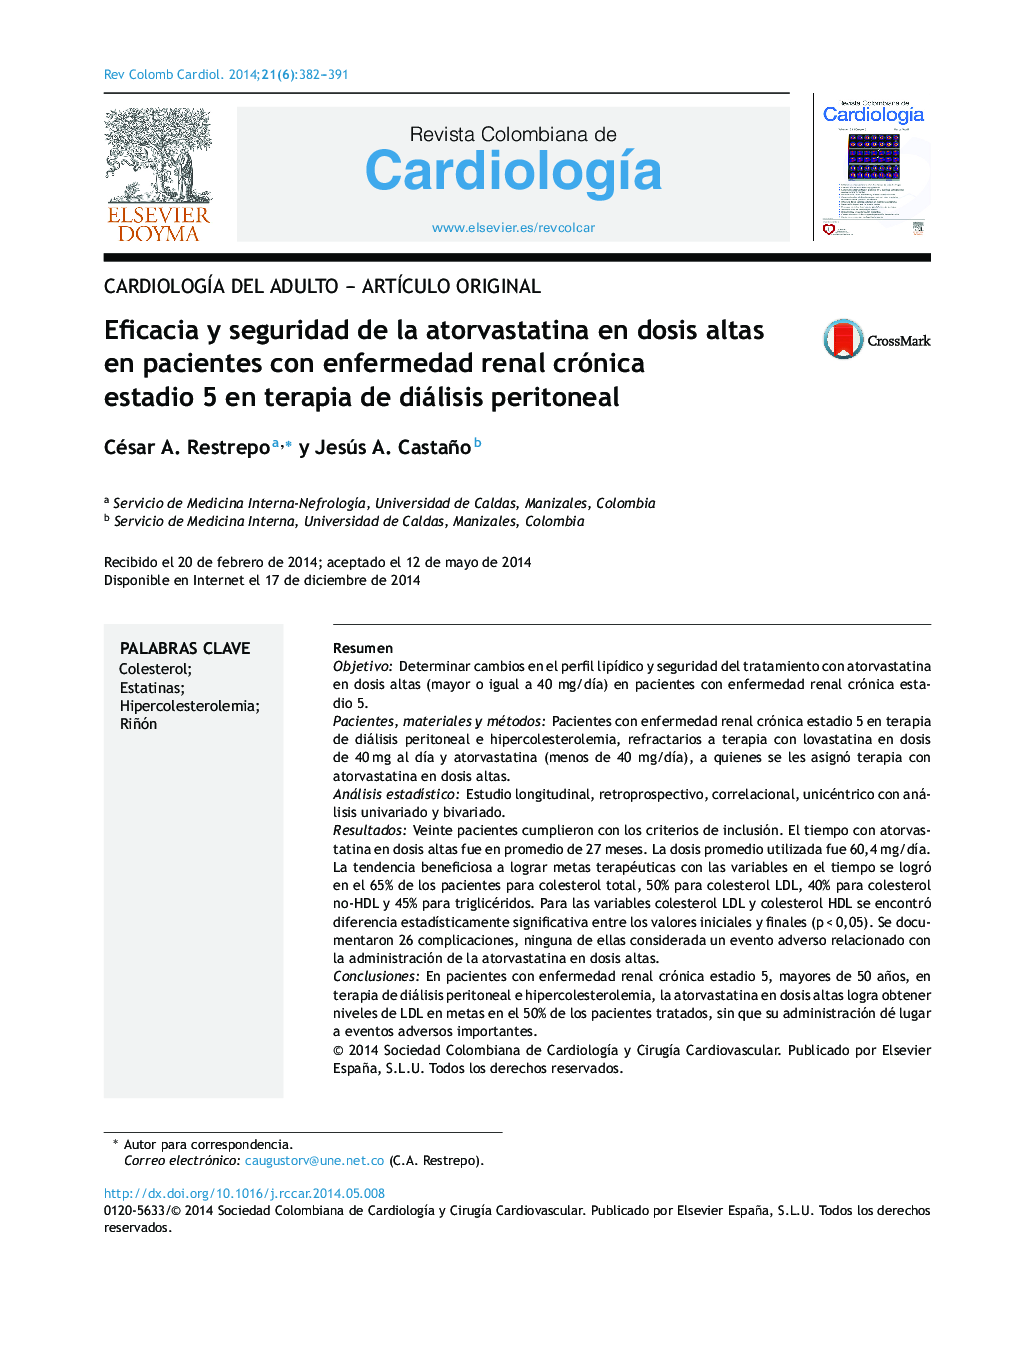 Eficacia y seguridad de la atorvastatina en dosis altas en pacientes con enfermedad renal crónica estadio 5 en terapia de diálisis peritoneal